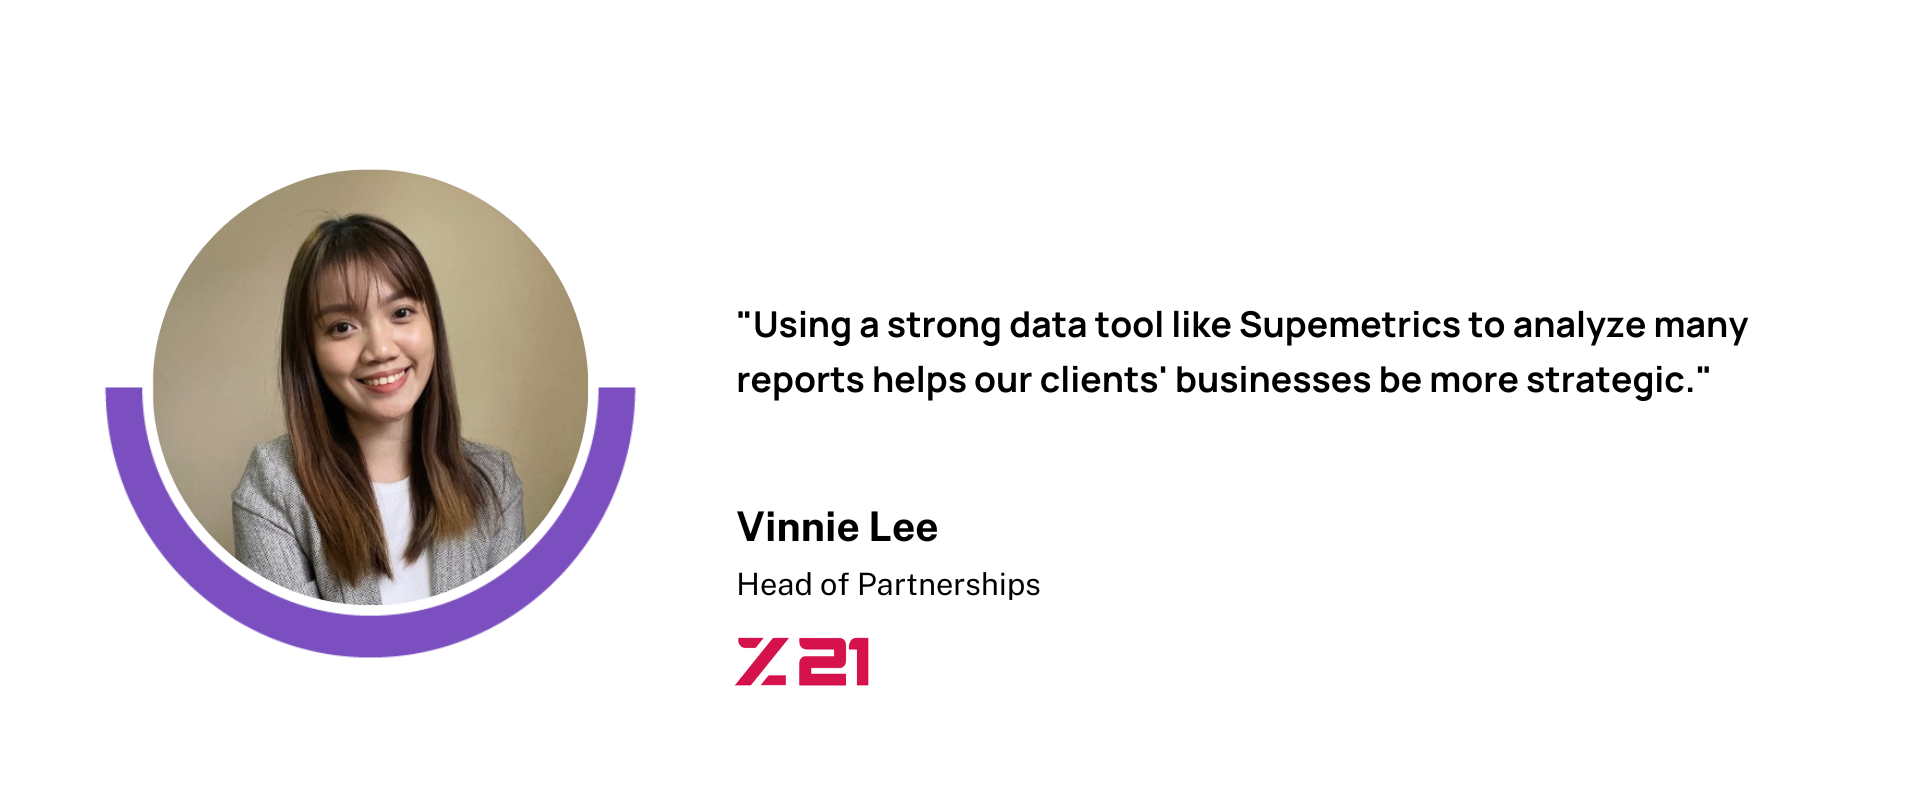 Vinnie Lee, Head of Partnerships, Z21 Studio